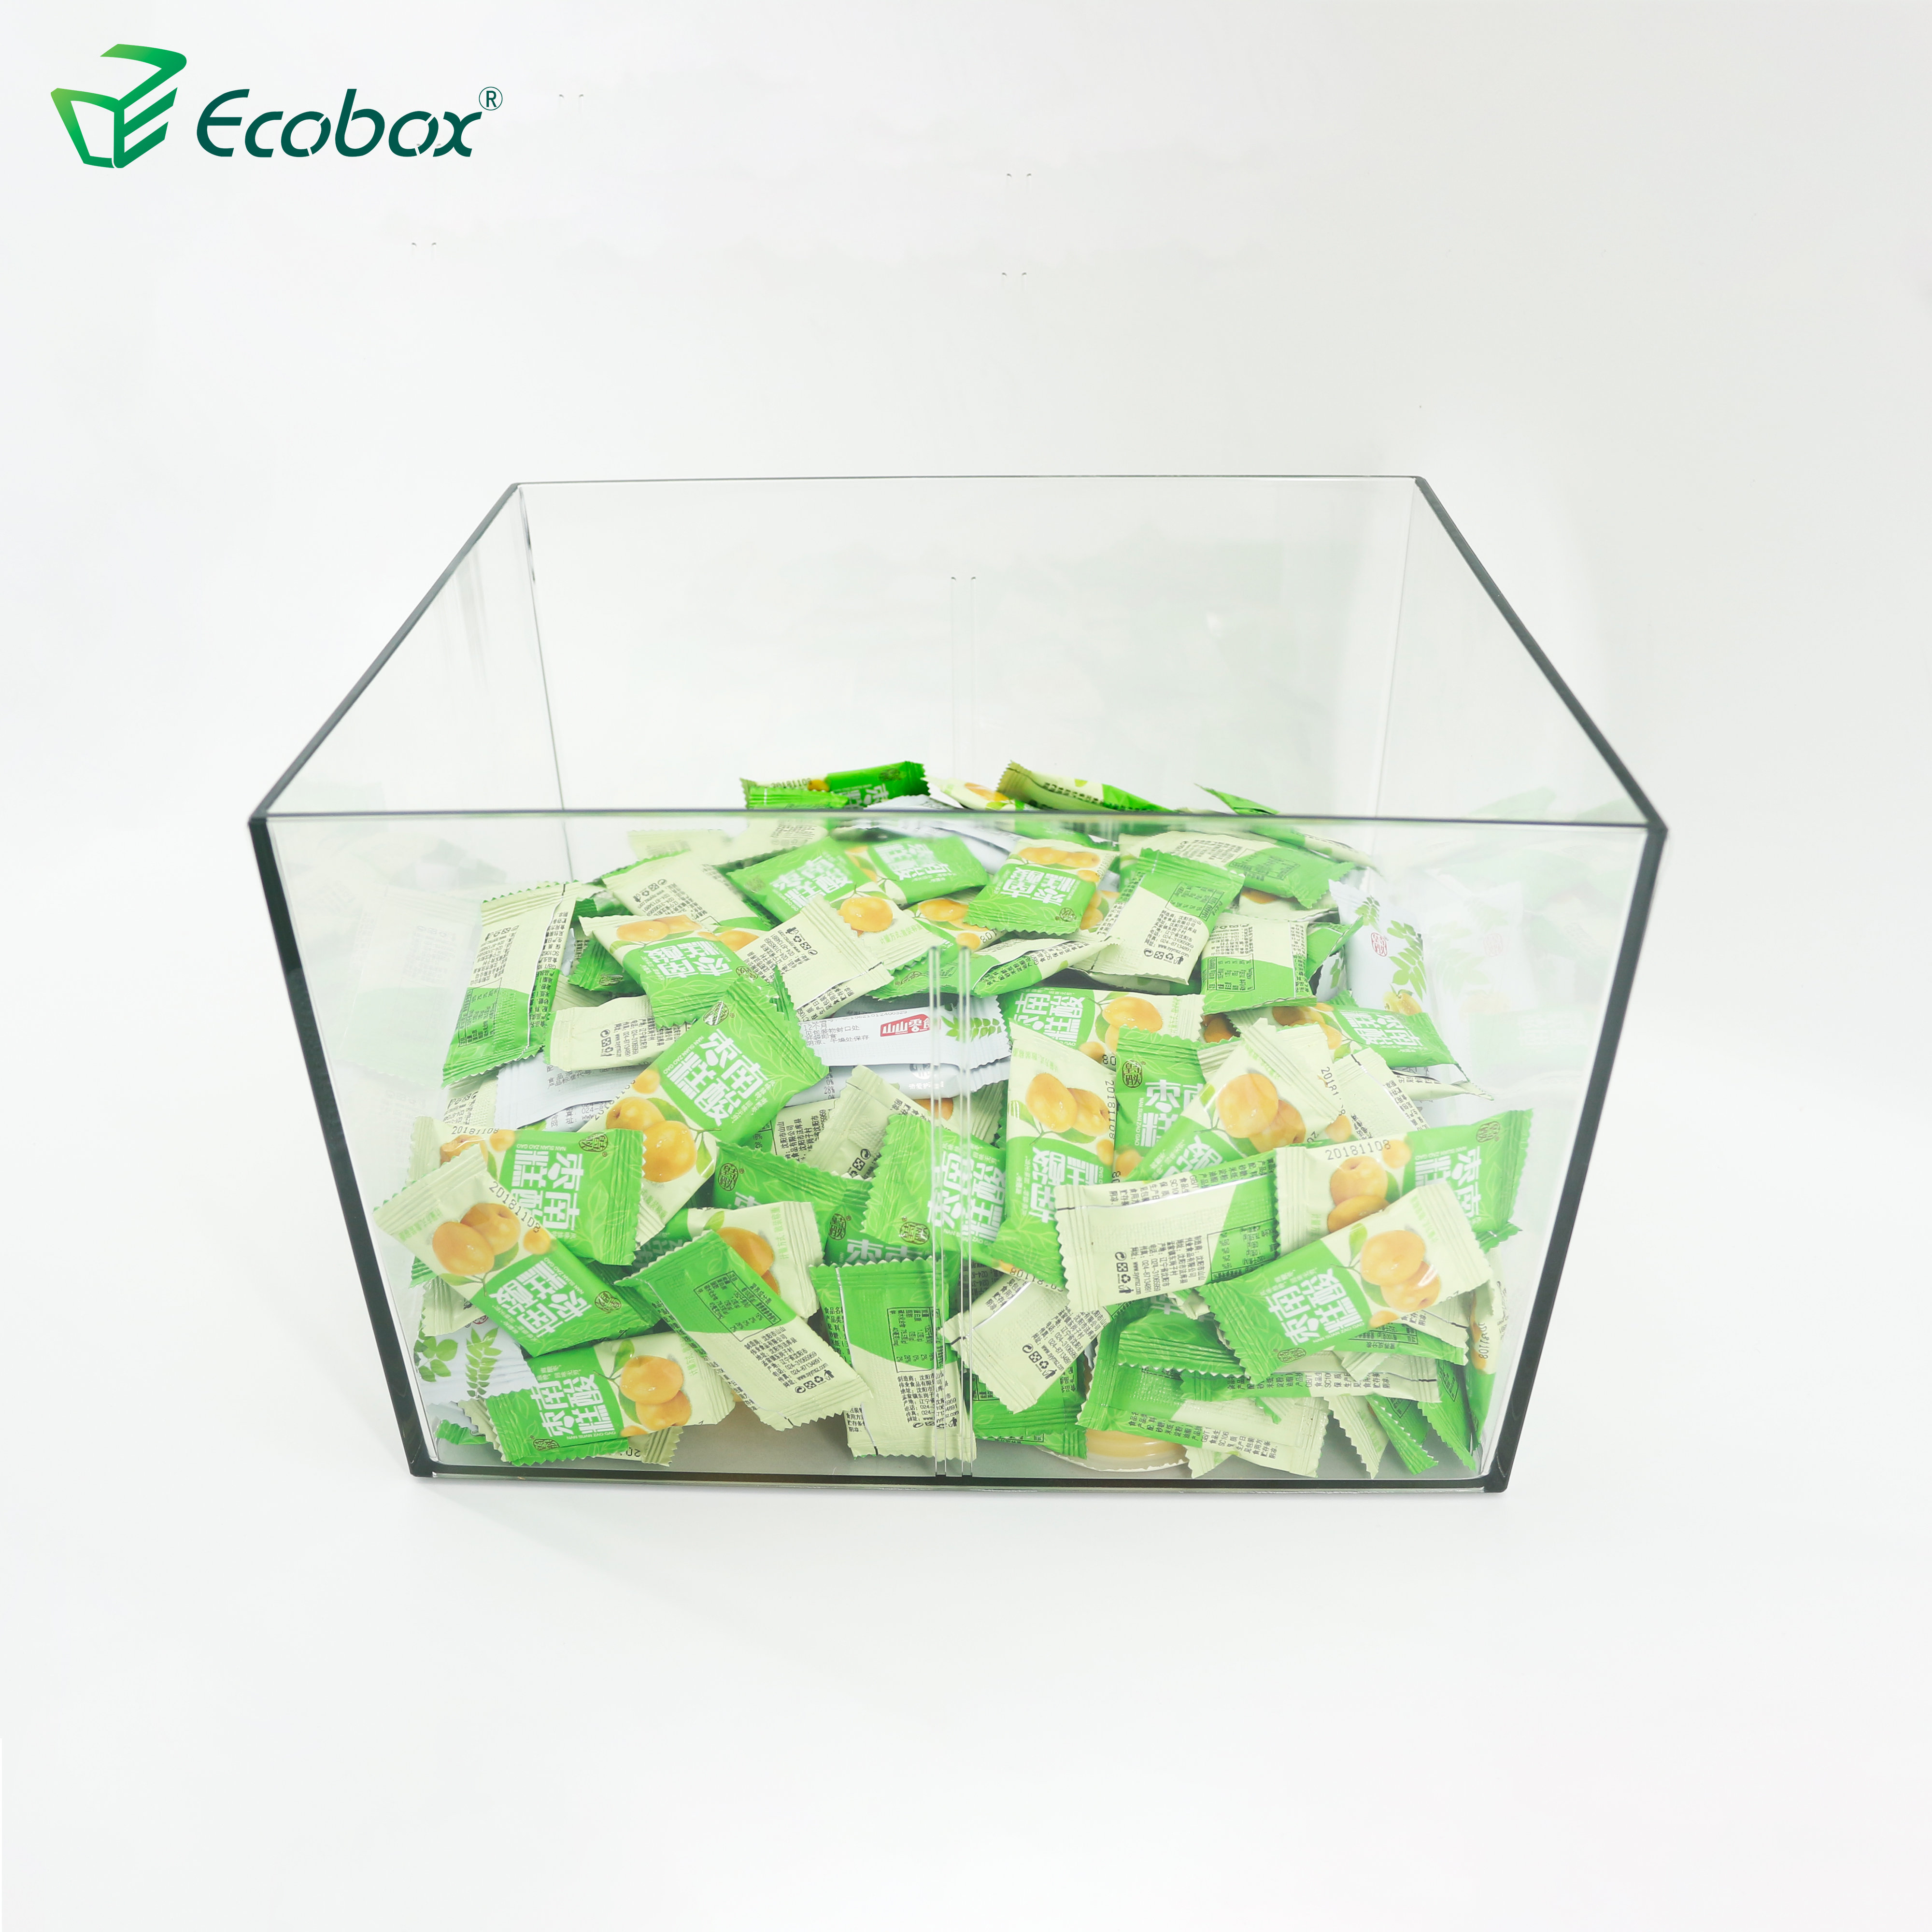 Ecobox SPH-006 Supermarkt-Großbehälter